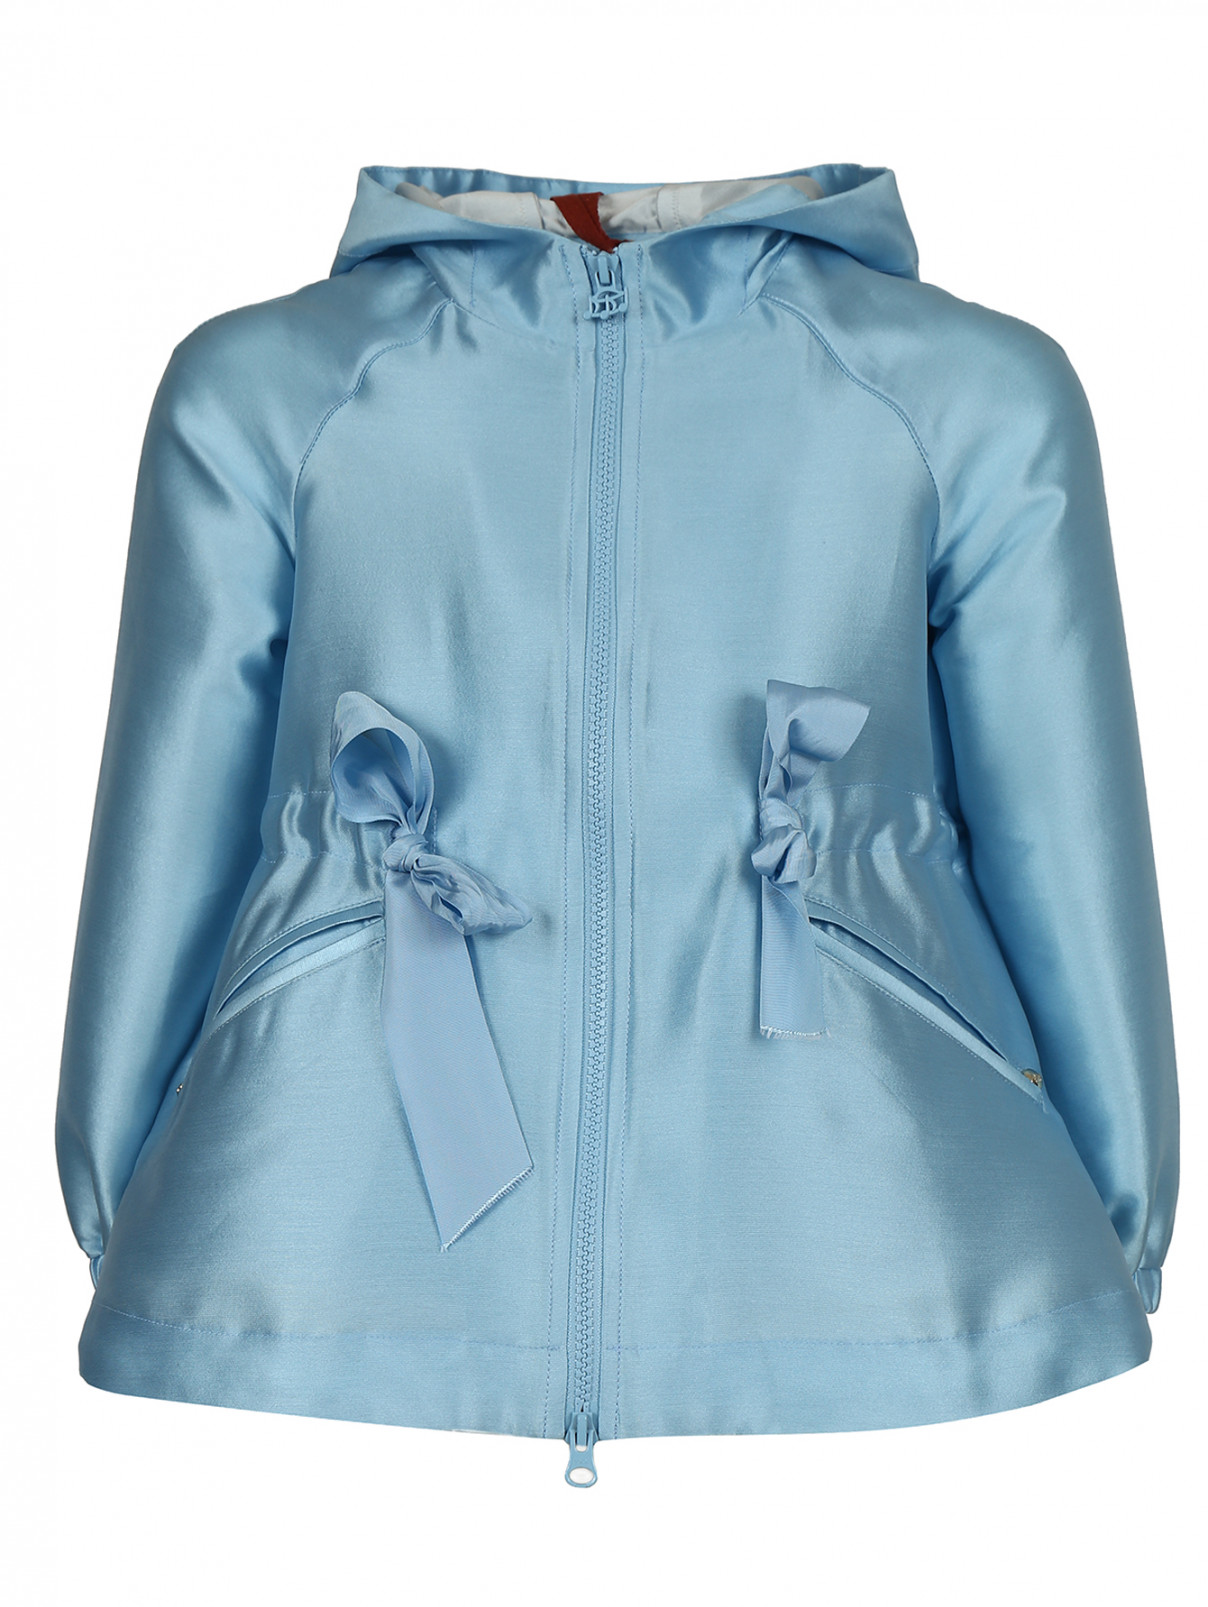 Легкая куртка на молнии с двумя боковыми карманами MiMiSol  –  Общий вид  – Цвет:  Синий